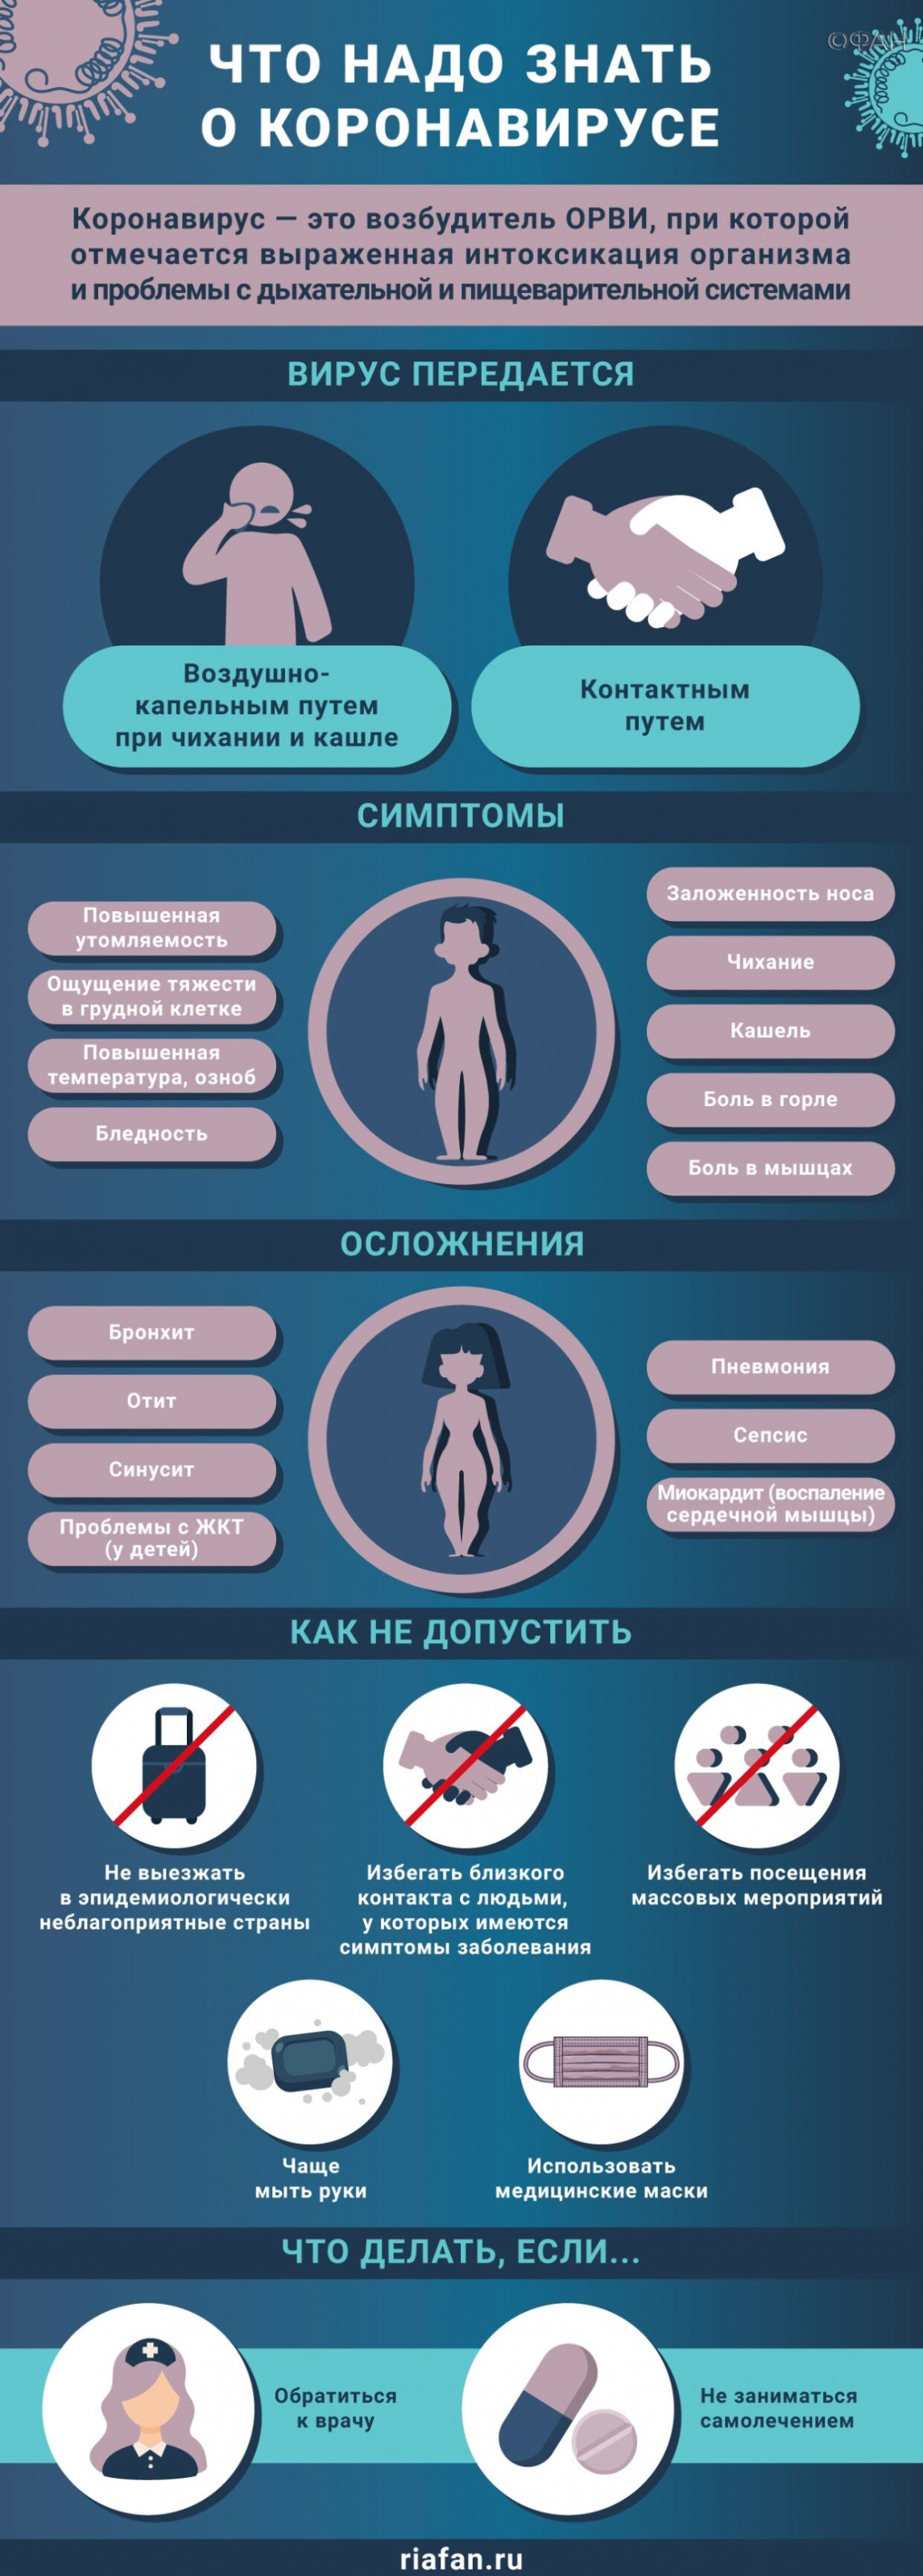 Большинство россиян готовы стать волонтерами в условиях коронавируса